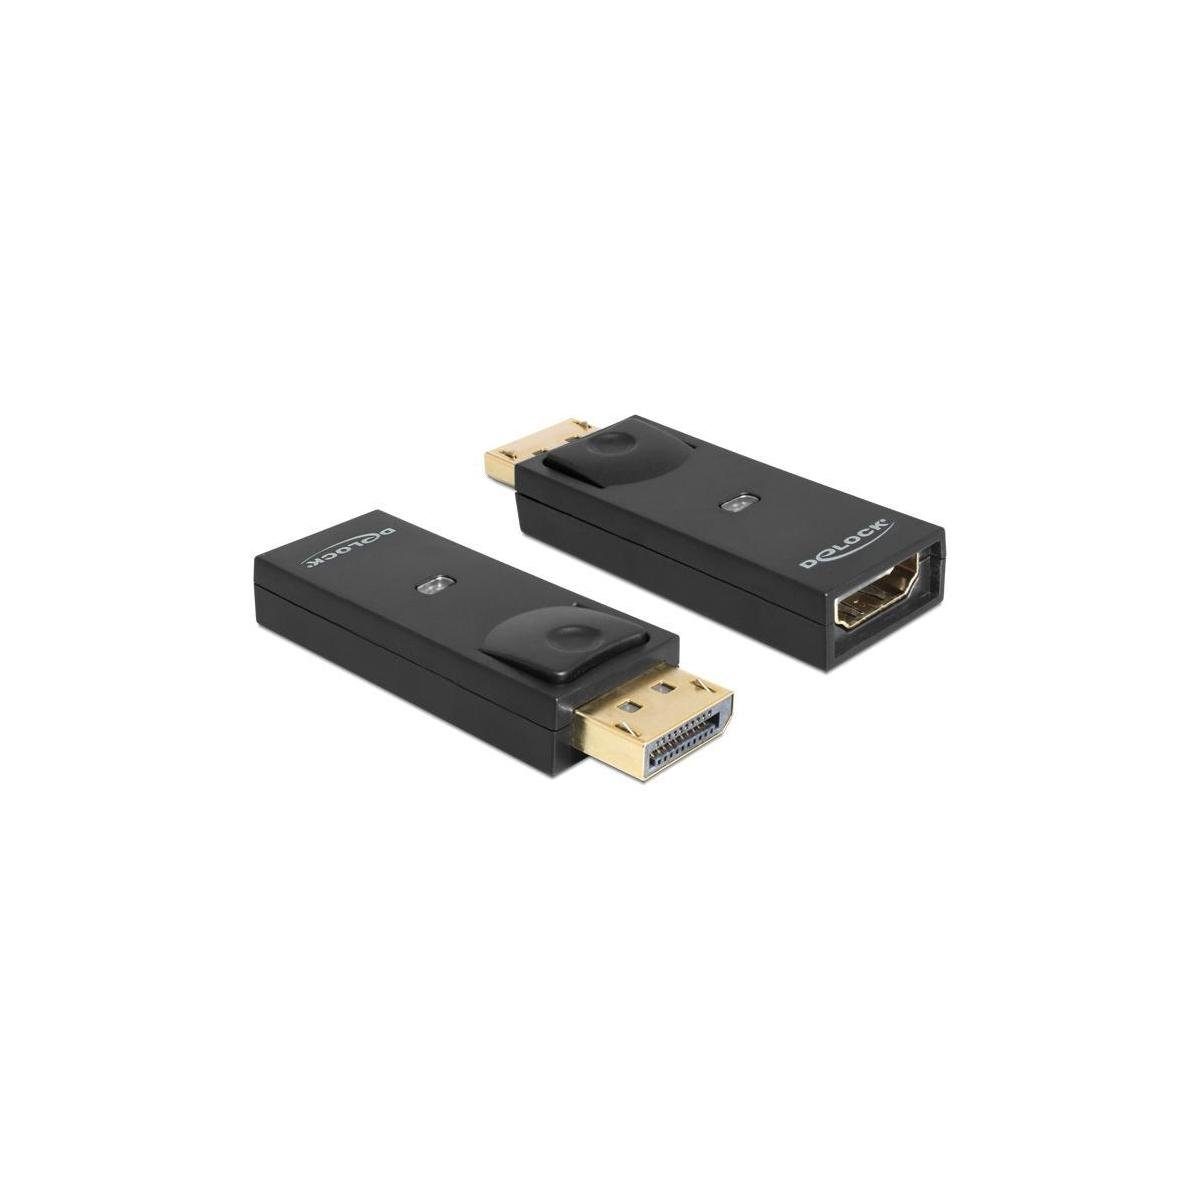 Delock Adapter schwarz Display Buchse 1.1 DisplayPort HDMI Passiv, > Computer-Kabel, Stecker Port, HDMI